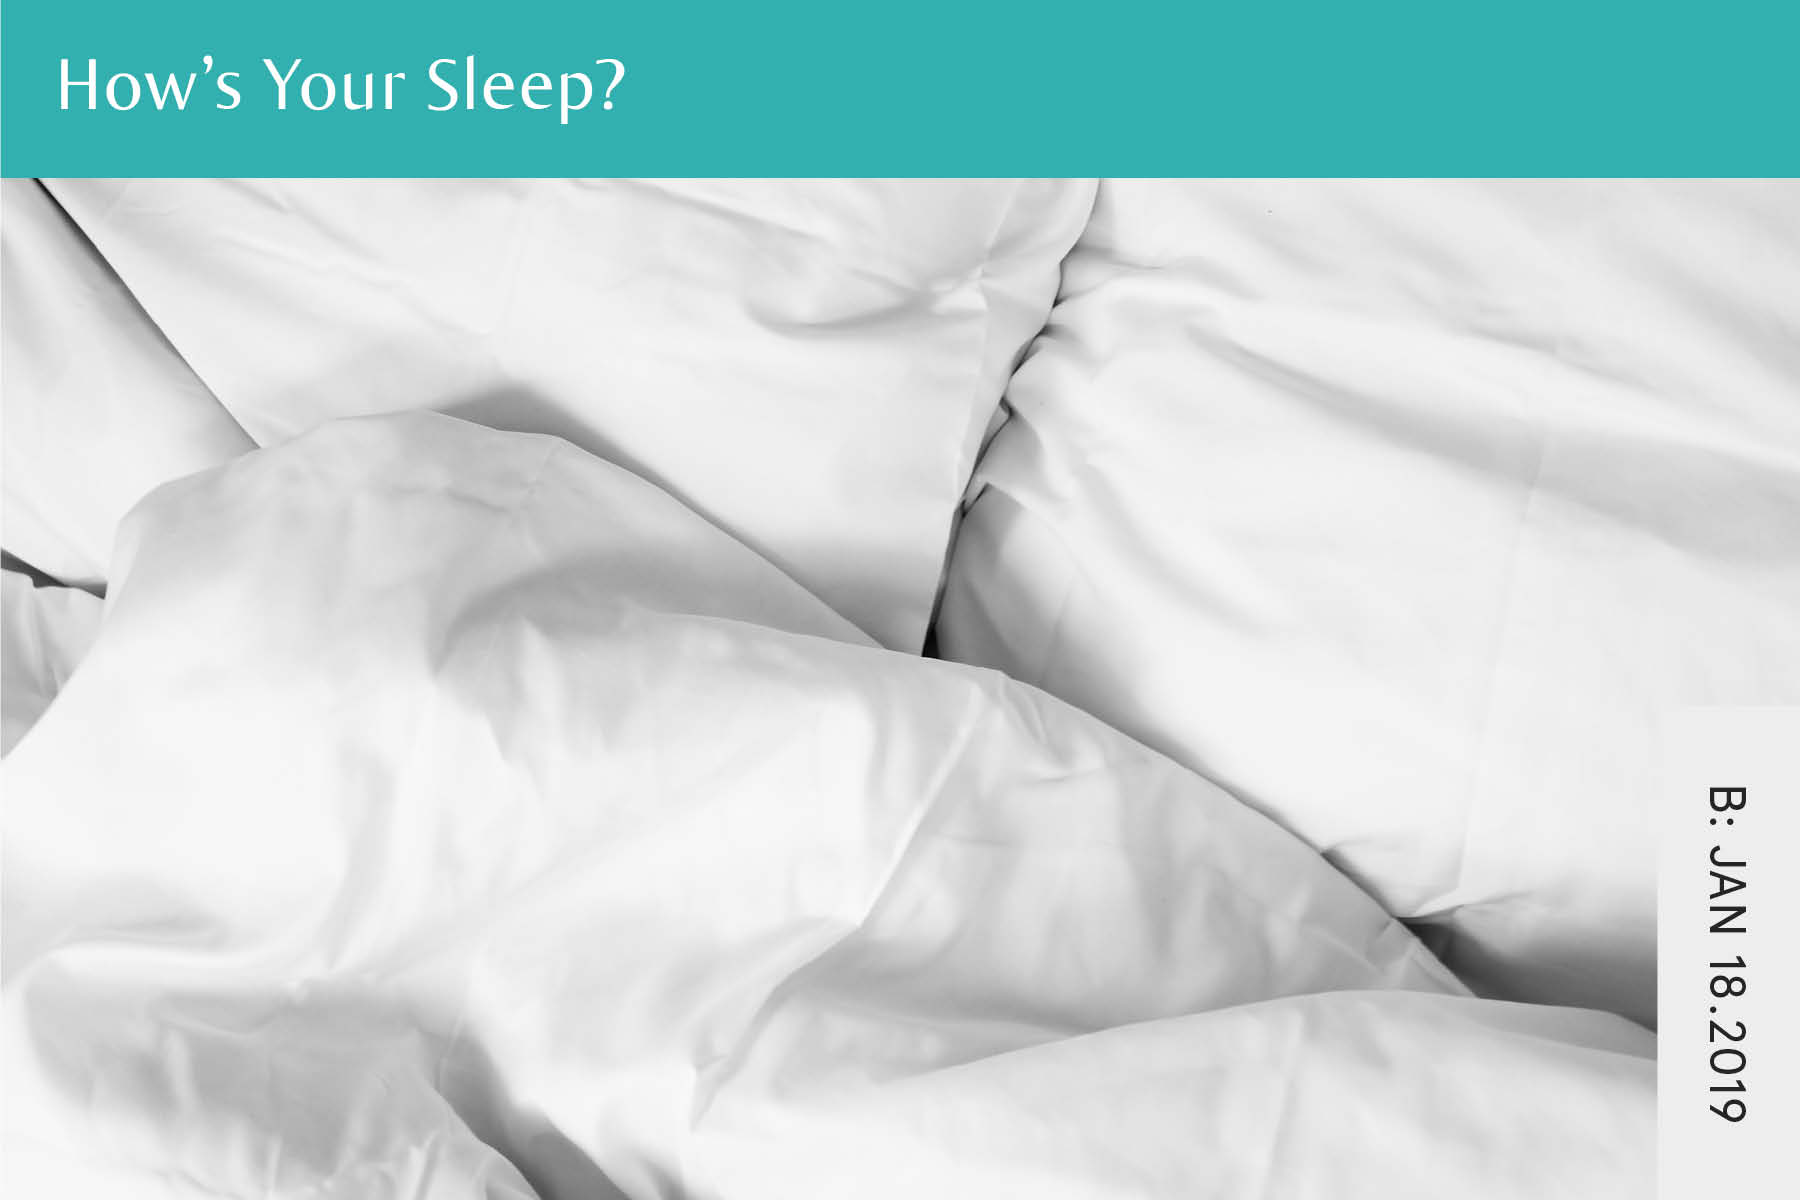 Giấc ngủ là một yếu tố quan trọng giúp cơ thể phục hồi sức khoẻ và năng lượng. Hãy xem hình ảnh liên quan để khám phá các bí quyết và lợi ích của giấc ngủ đối với sức khỏe và cuộc sống của bạn.